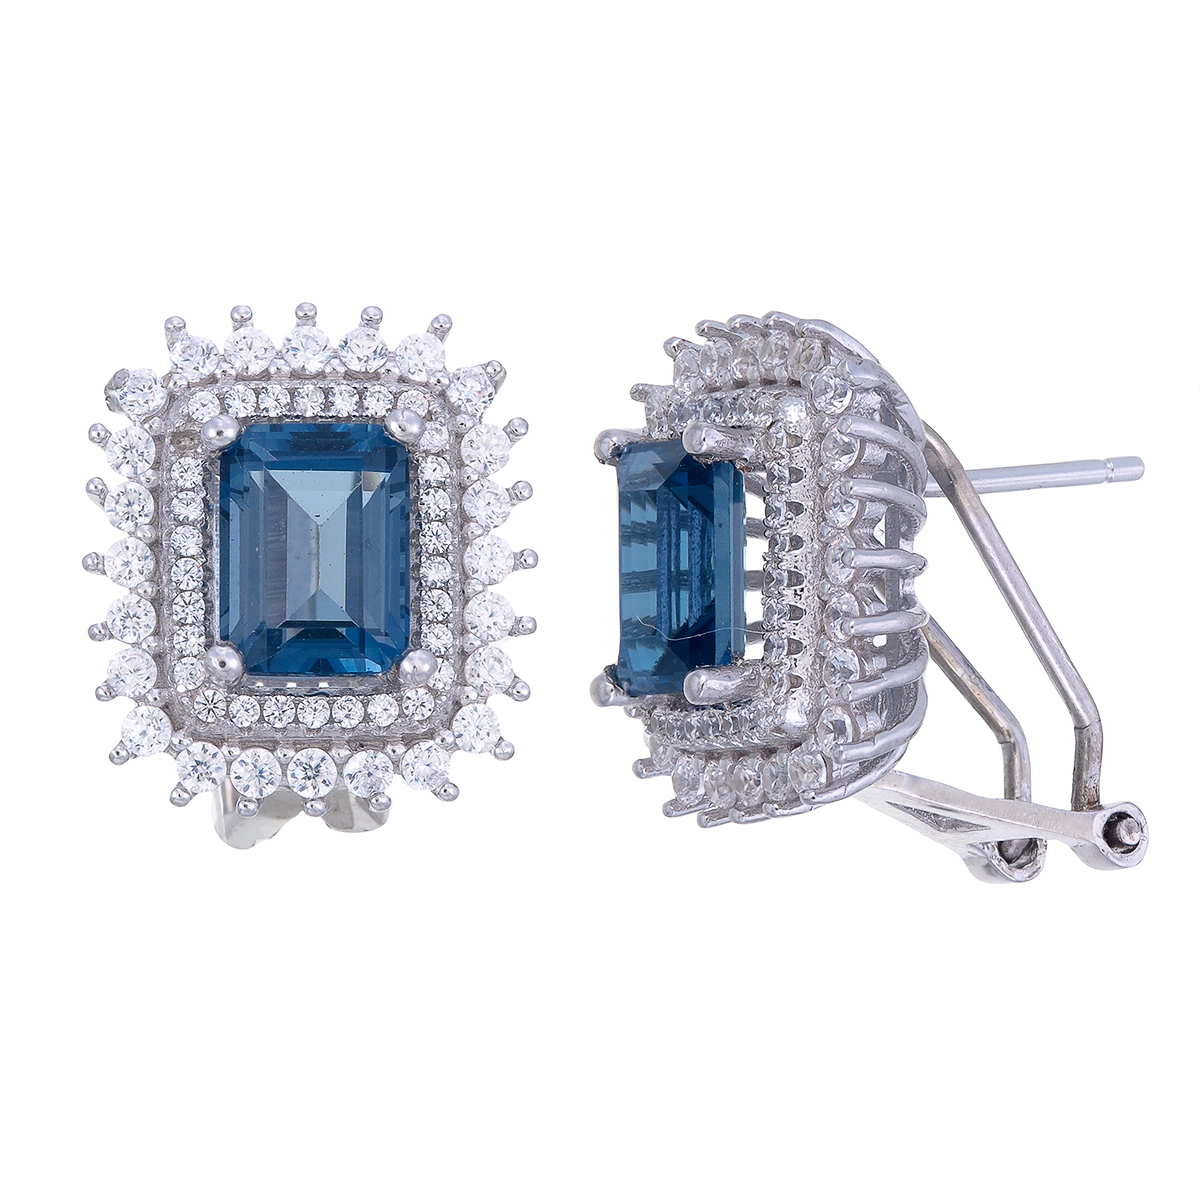 ต่างหูเงิน 92.5 % ฝังพลอยแท้ ลอนดอนบลูโทพาส ประดับด้วยเพชรรัสเซีย/London blue topaz sterling gemstone earrings/ genuine gemstone/octagon london topaz earrings/ clip earrings